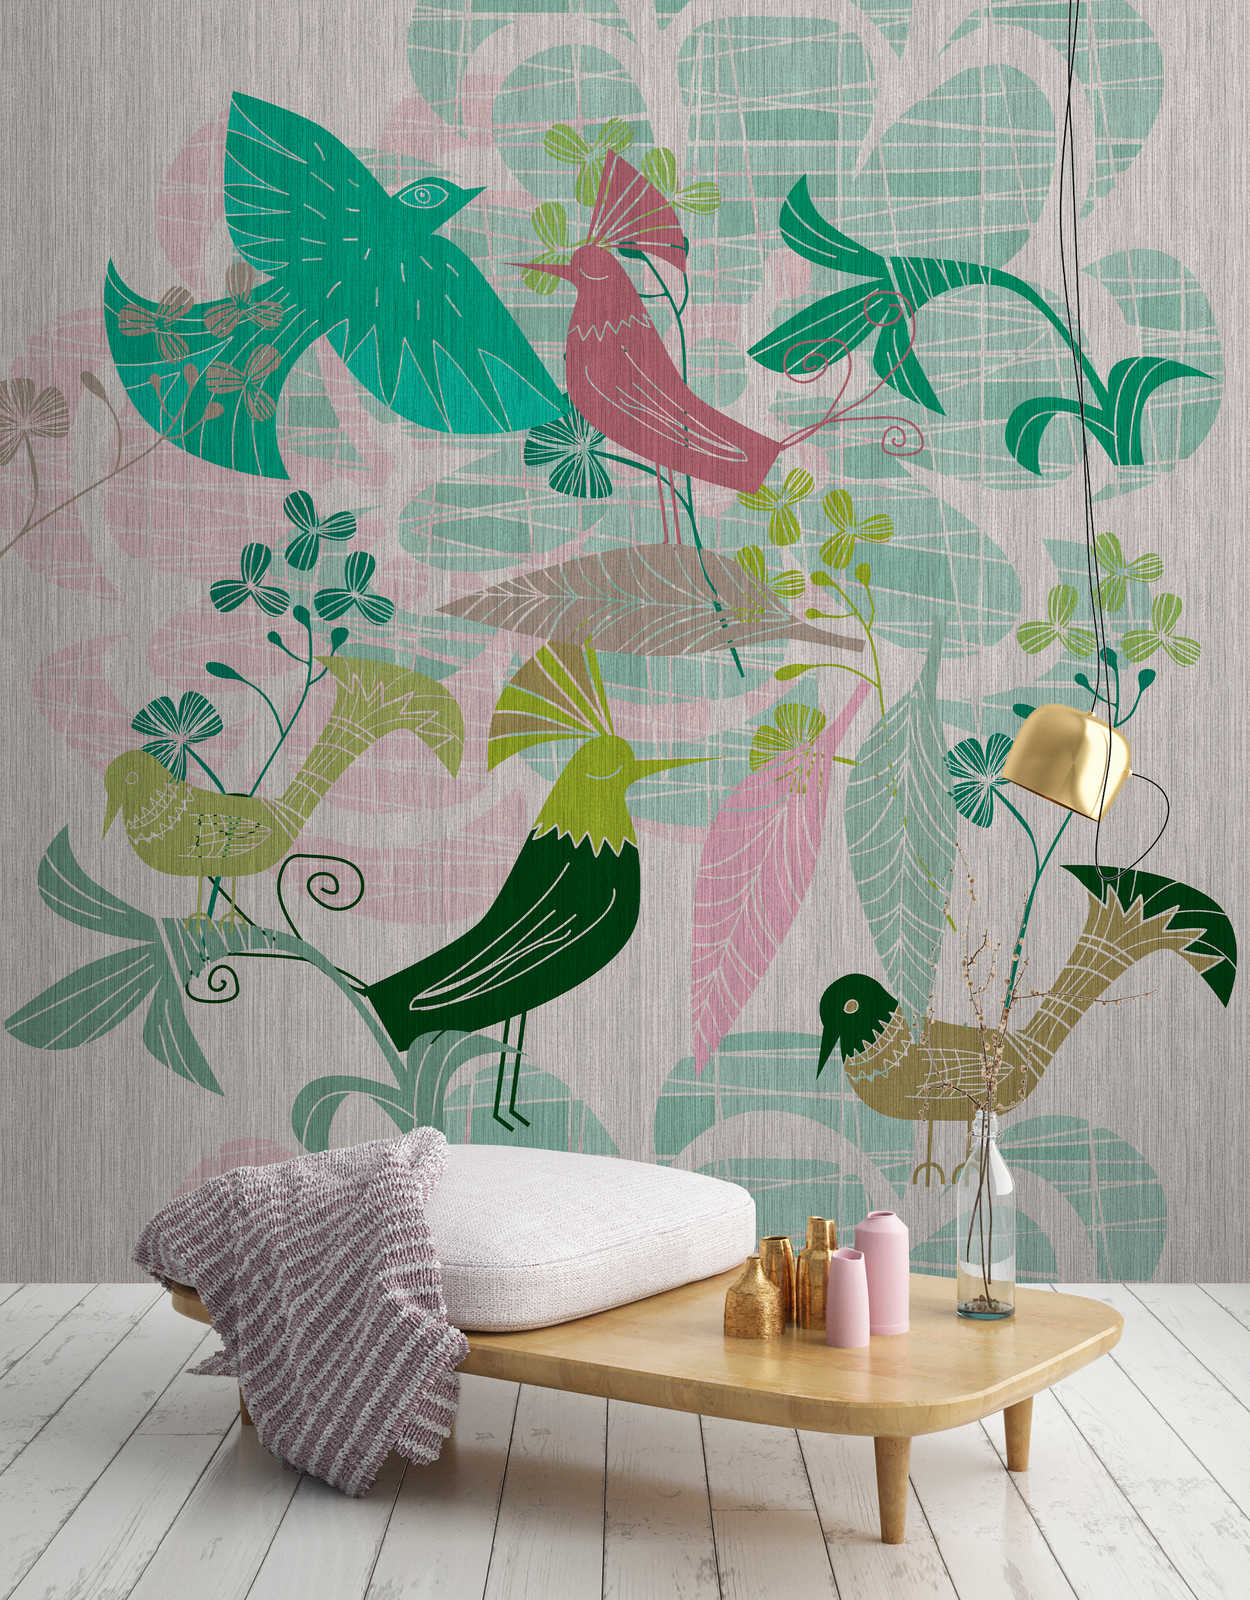             Birdland 3 - Papier peint panoramique Oiseaux verts et roses de style rétro
        